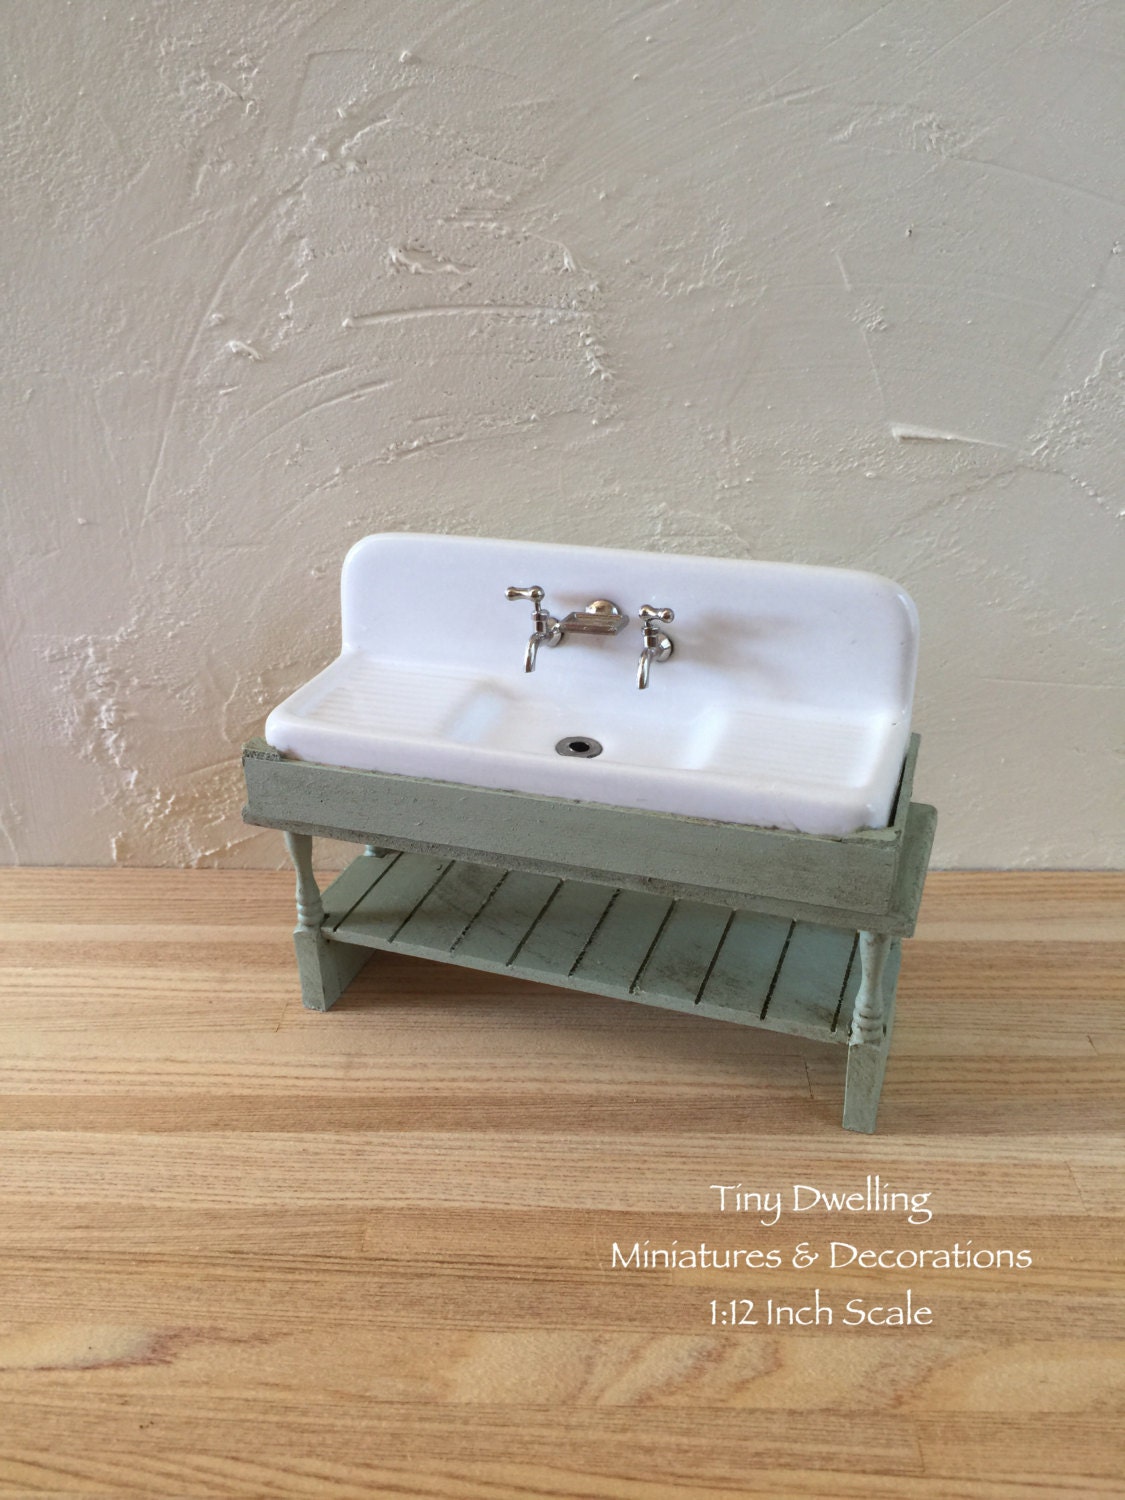 Miniature Sink Dish Sink Dollhouse Kitchen Sink Dollhouse